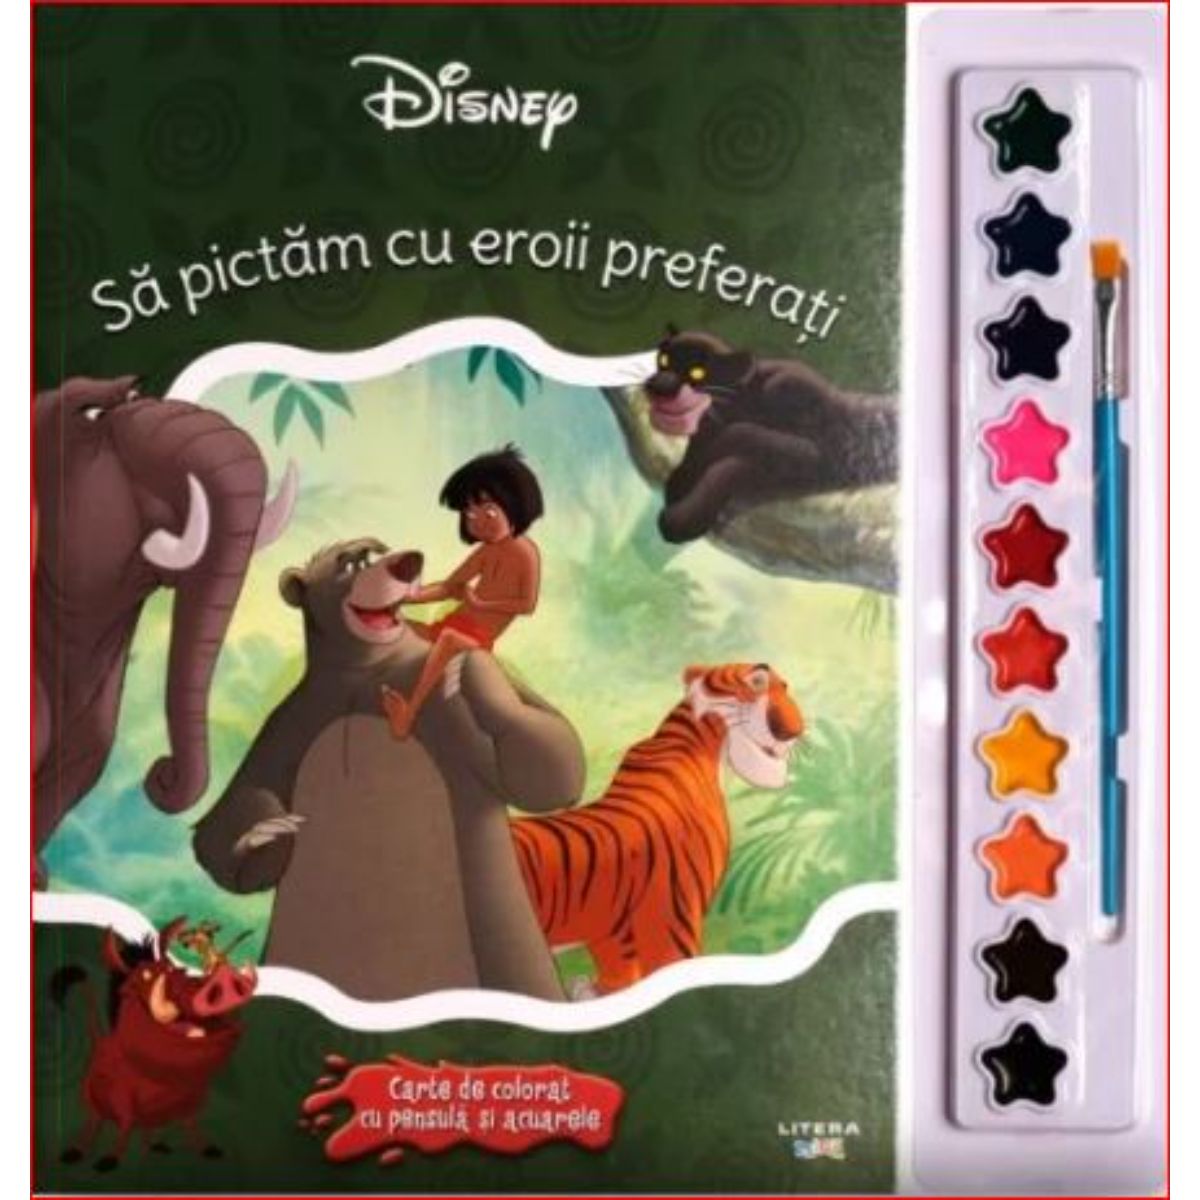 Sa pictam cu eroii preferati carte de colorat cu pensule si acuarele, Disney Disney imagine 2022